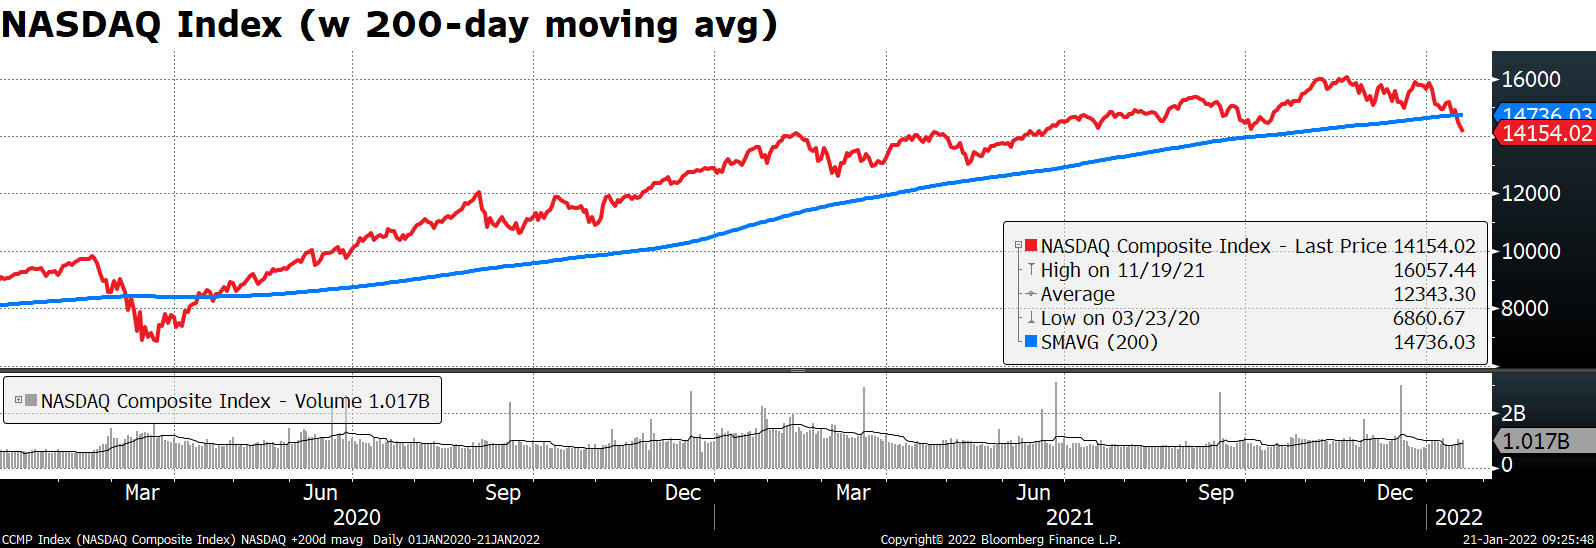 NASDAQ Index (w 200-day moving avg)